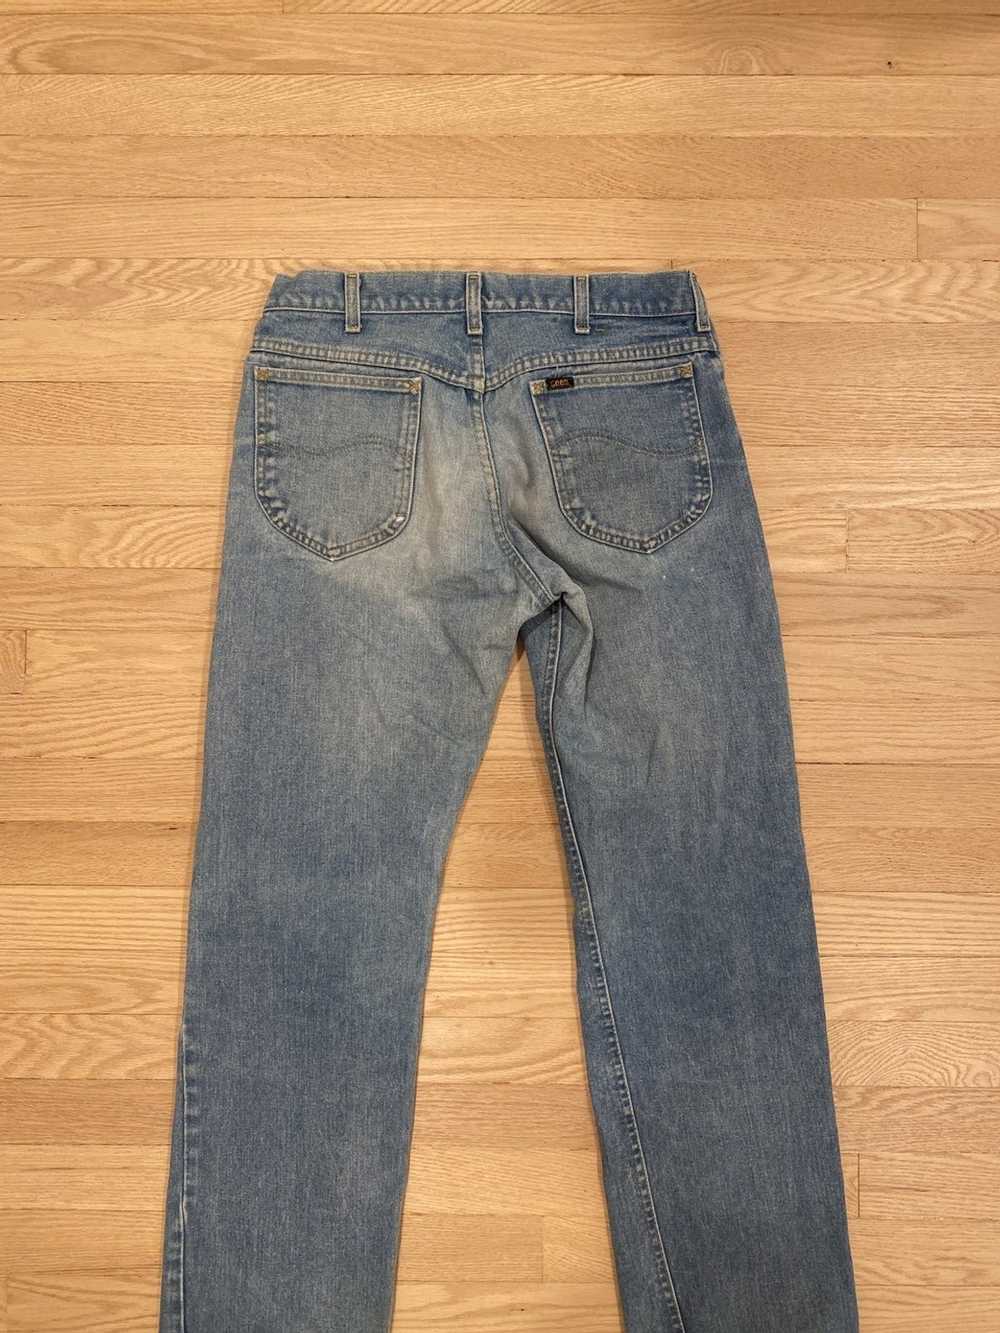 Lee Vintage Lee Jeans - image 3